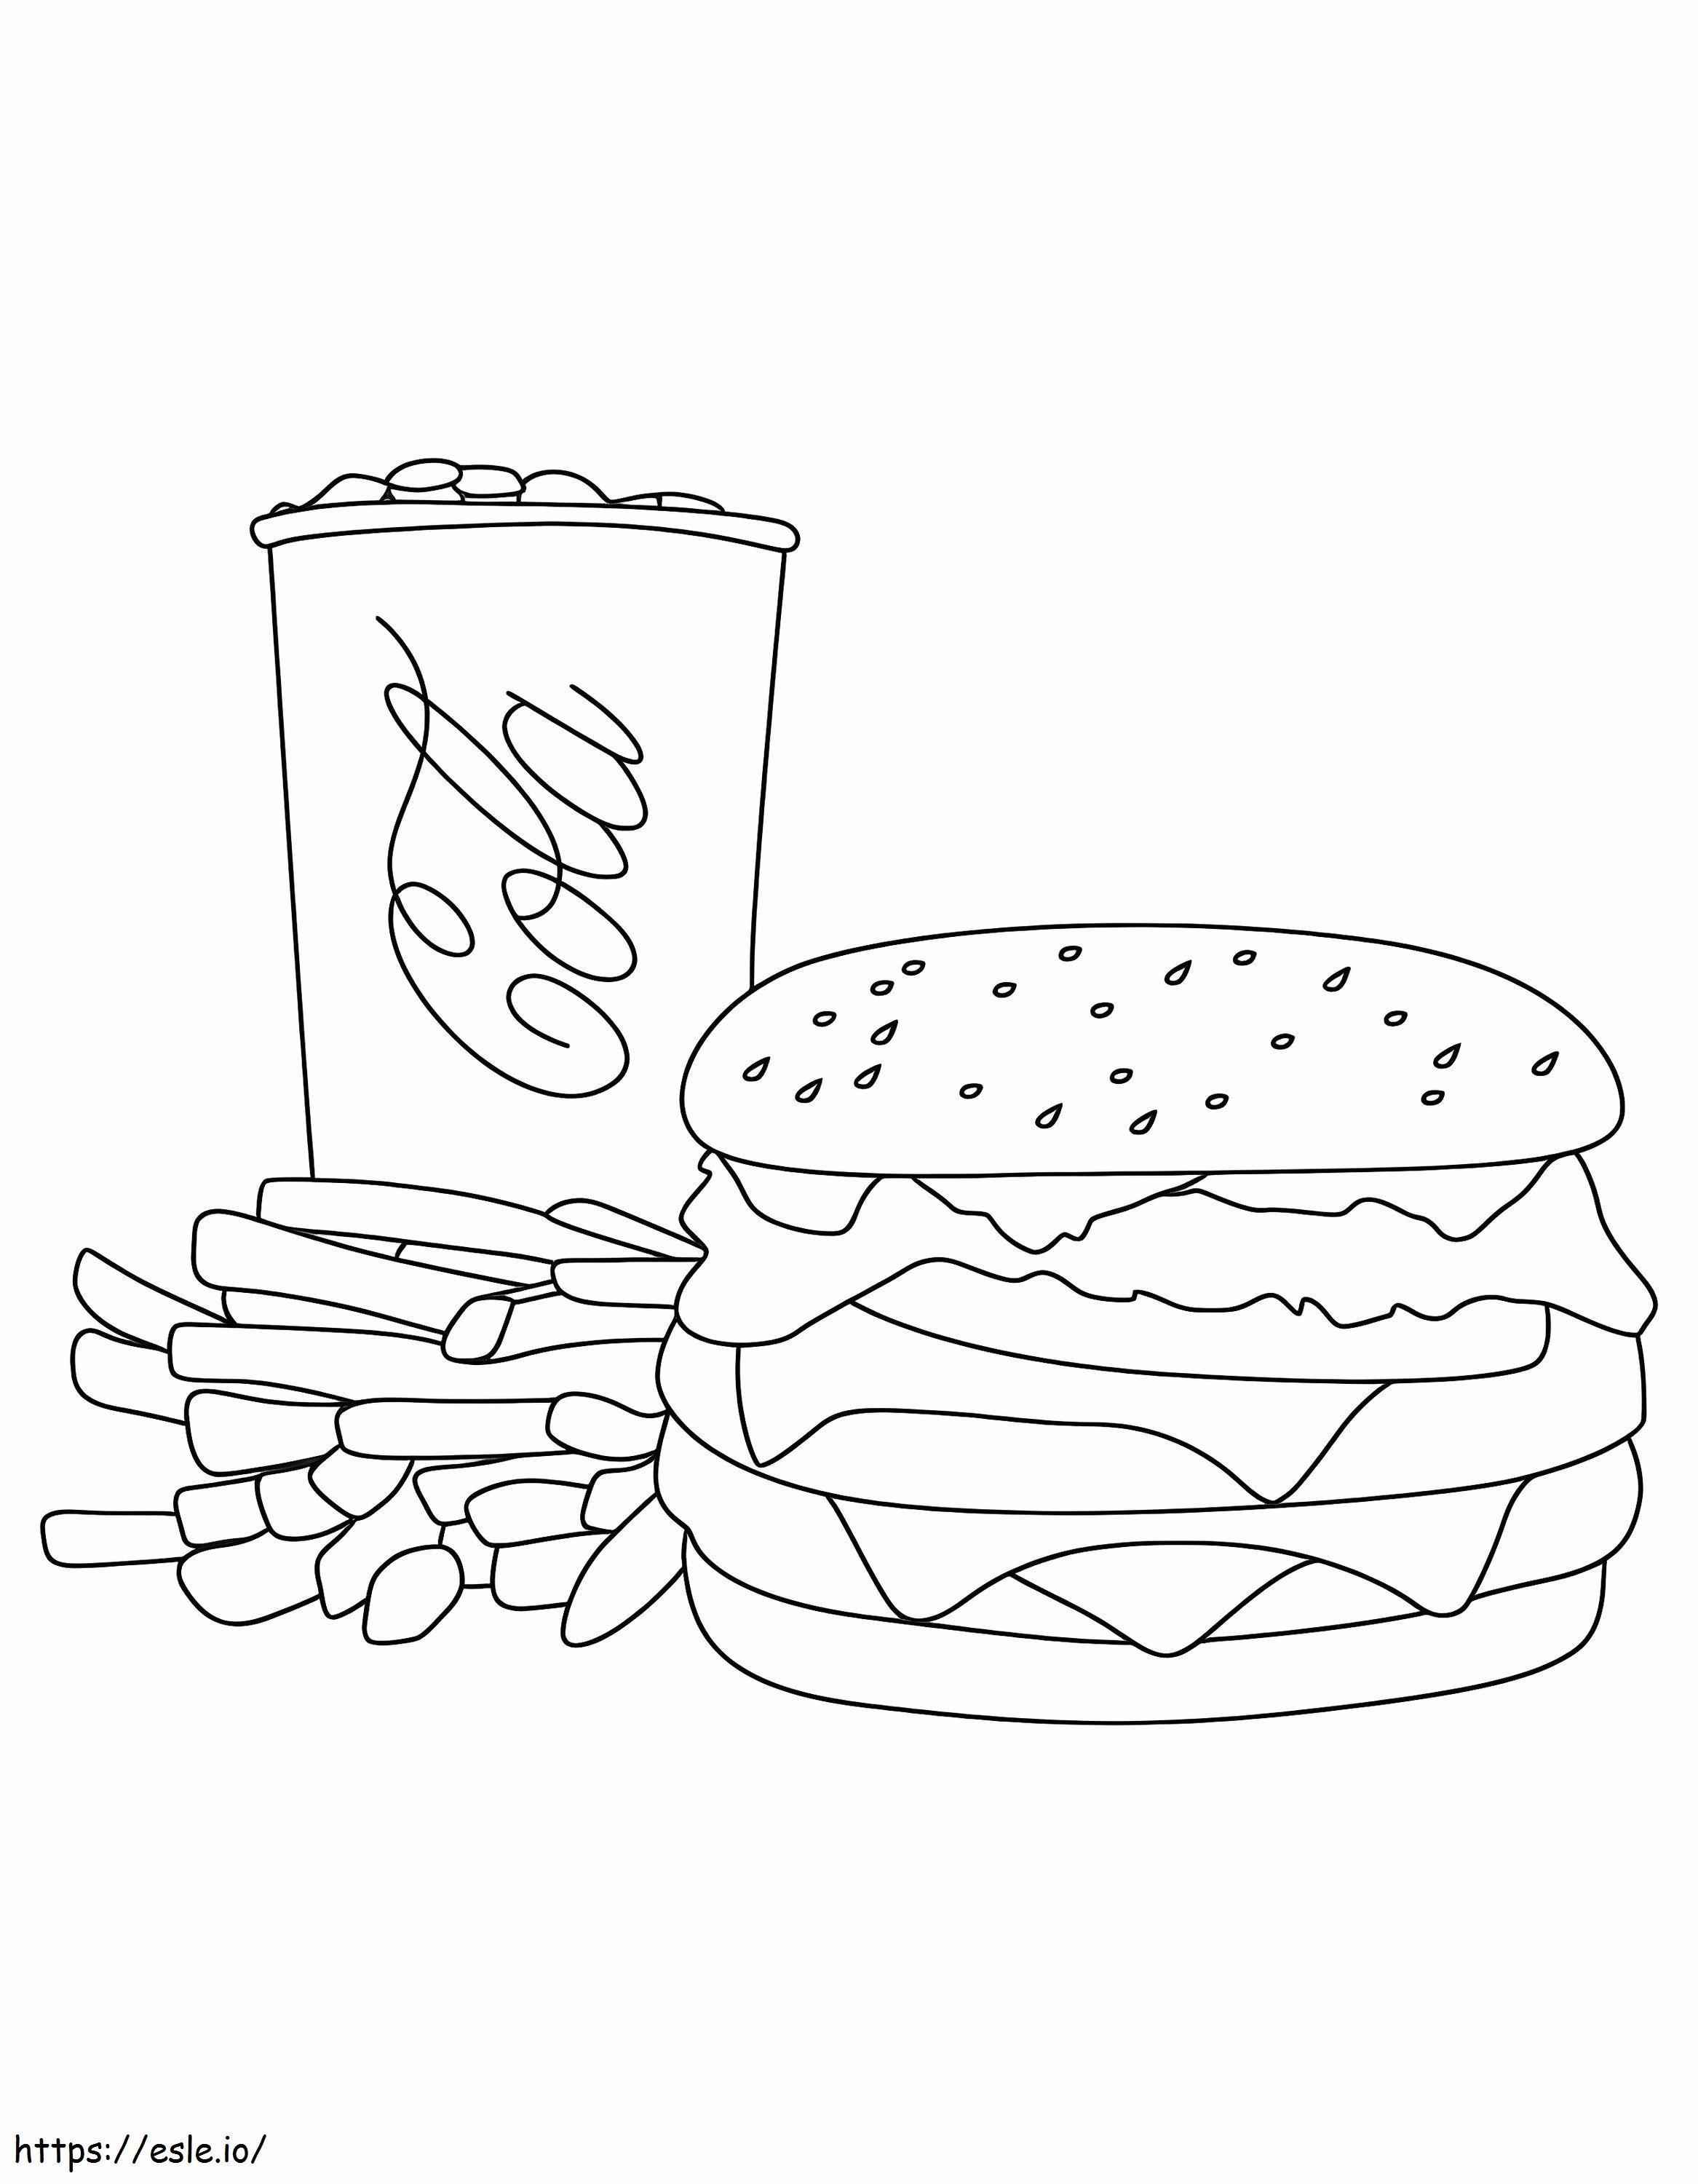 Eine McDonalds-Essenskombination ausmalbilder